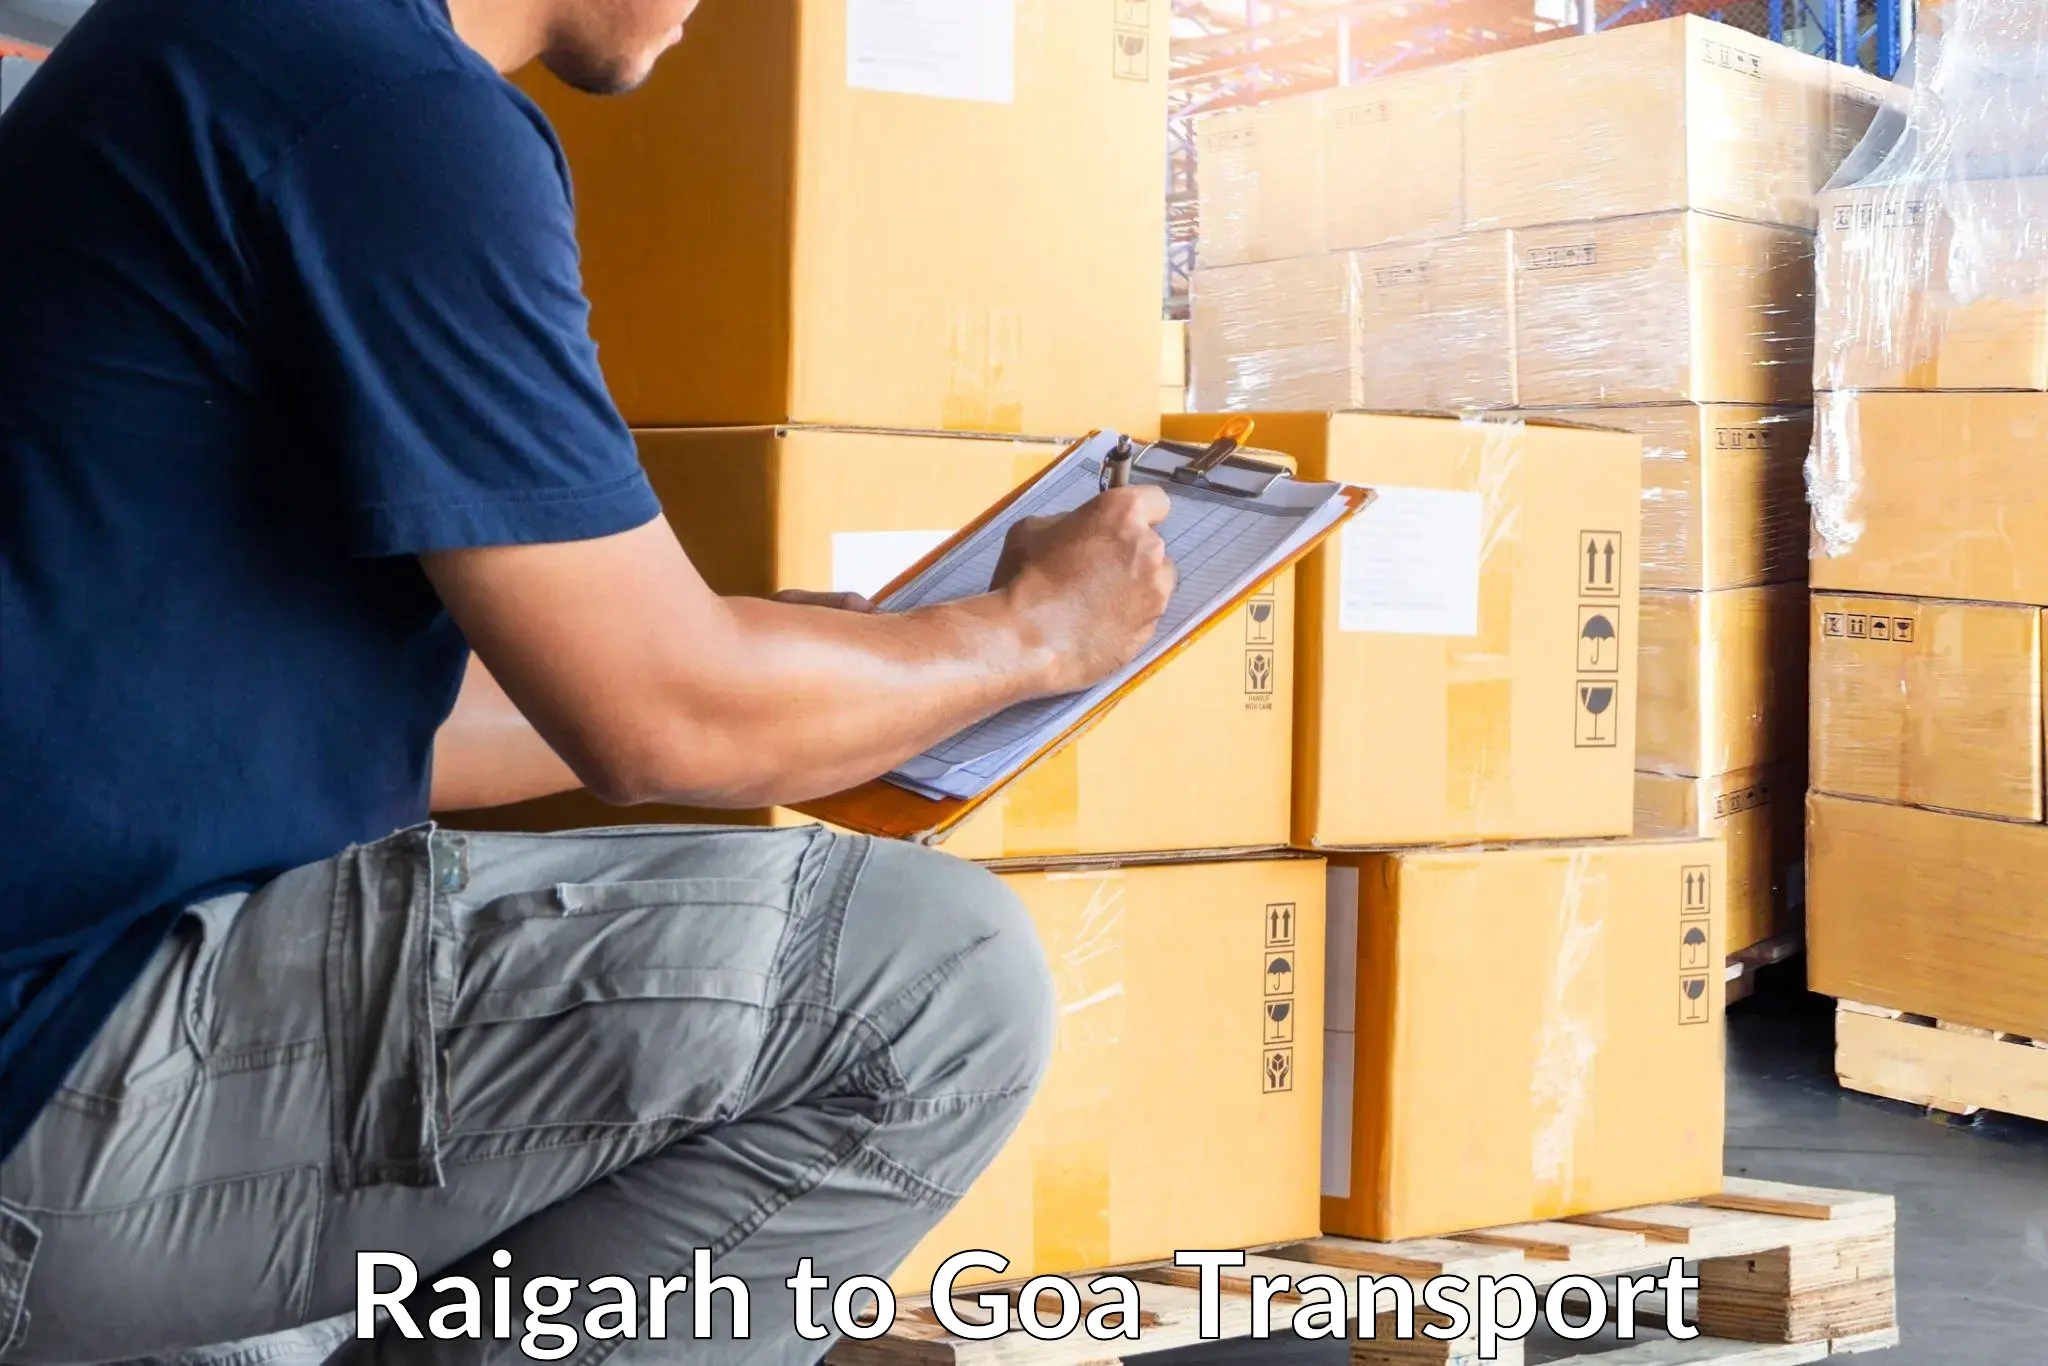 Air cargo transport services Raigarh to Mormugao Port